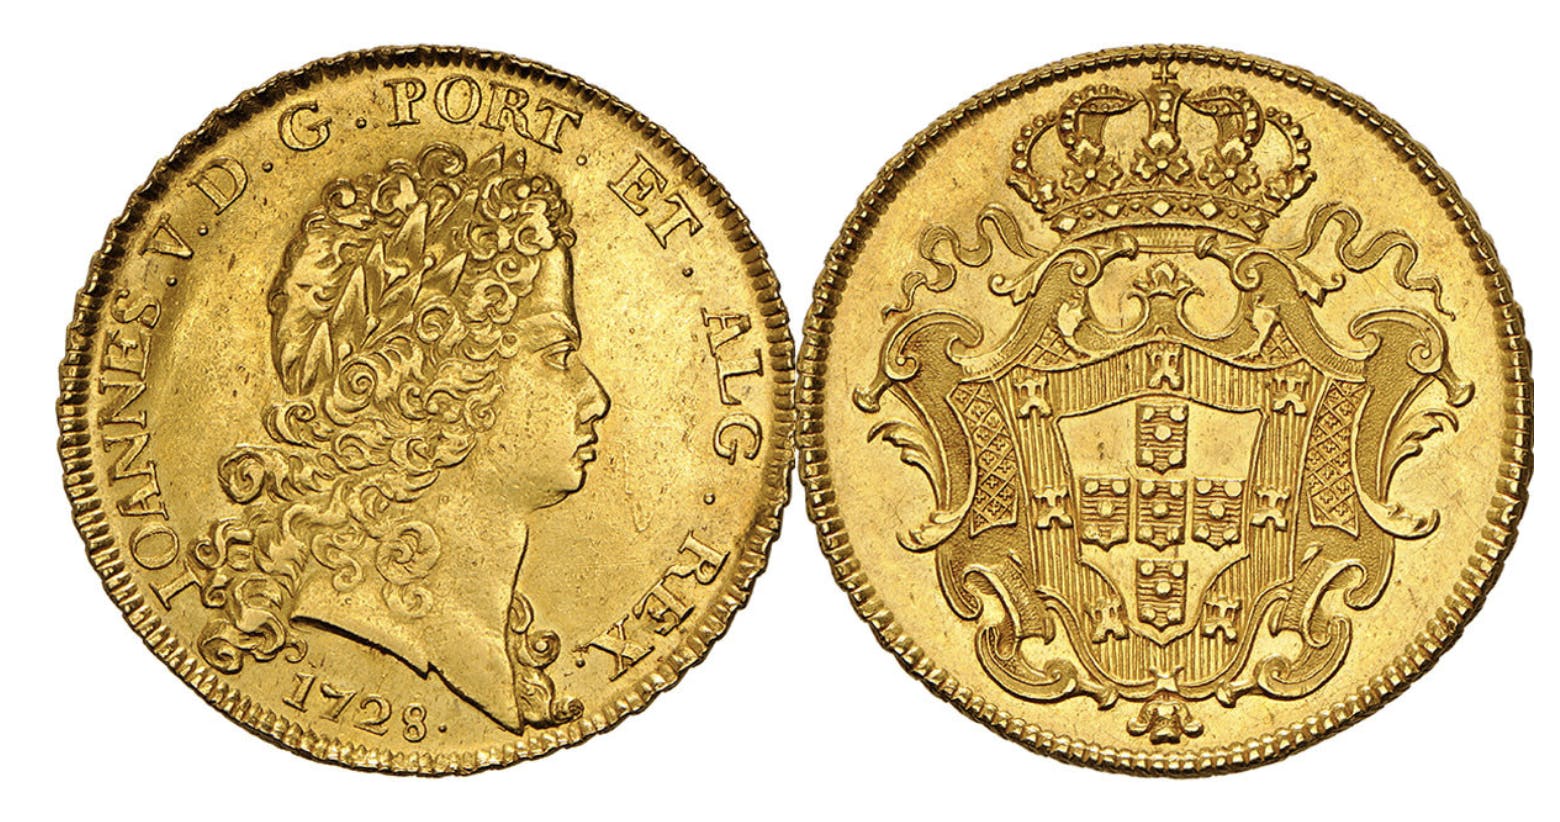 Dobra de D. João V – 24 escudos Moneda de oro de Portugal, 1731.  Diámetro: 53 mm, Peso: 84,41 g, Metal: Oro     Dobra 1 © Heritage Auctions